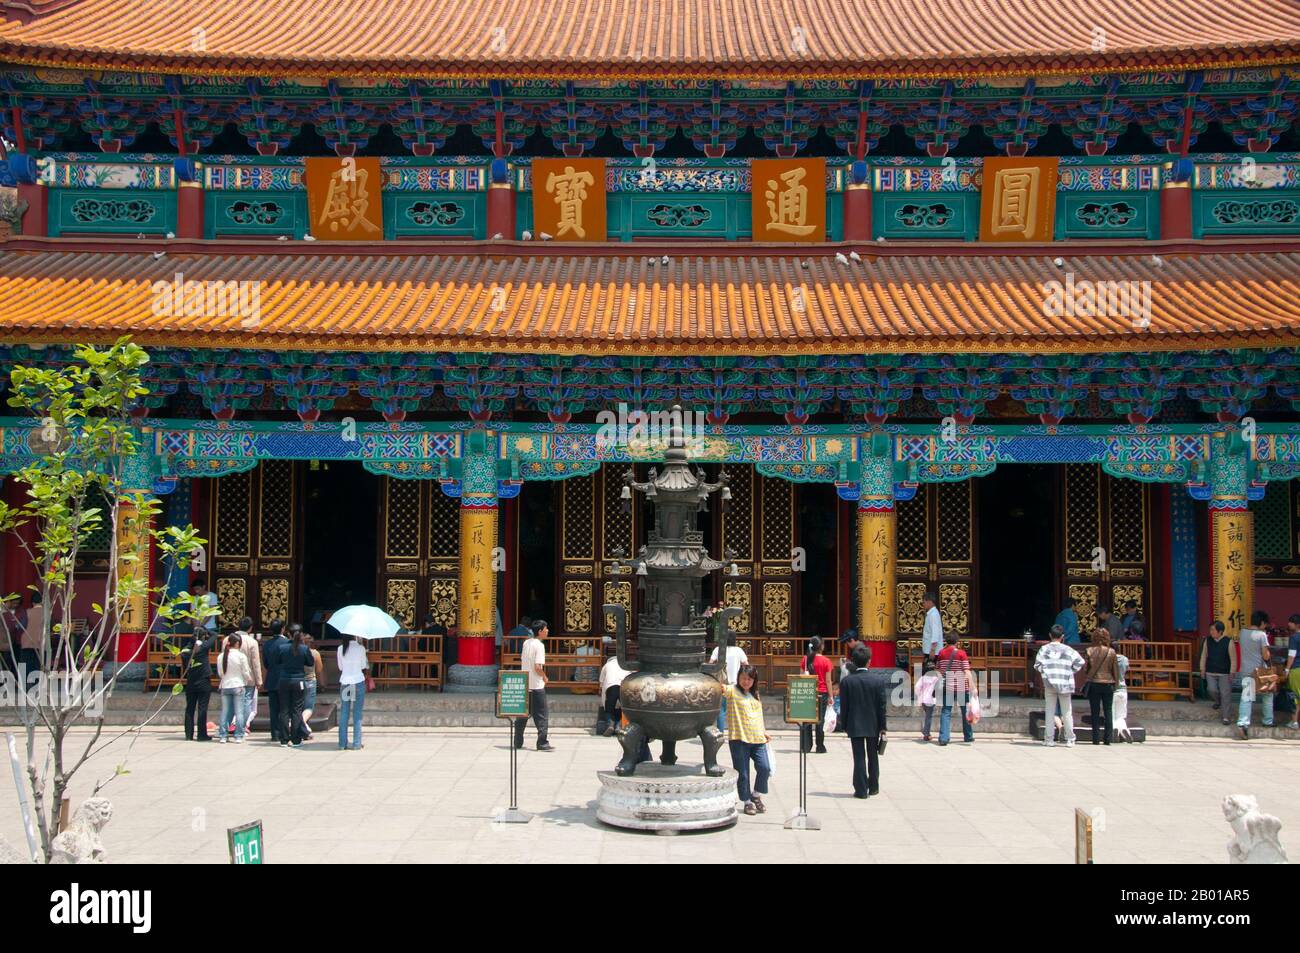 China: Große Halle des Buddha aus der Ming-Dynastie, Yuantong Si (Yuantong-Tempel), Kunming, Provinz Yunnan. Der Yuantong Tempel stammt ursprünglich aus dem Königreich Nanzhao zur Zeit der Tang Dynastie (618-907). Nach zwei großen Restaurierungen und Erweiterungen in der Chenghua-Periode (1465-1487) der Ming-Dynastie und dem 24.. Jahr der Herrschaft von Kaiser Kangxi (1686) in der Qing-Dynastie, nahm der Tempel sein heutiges Design an, mit überdachten Korridoren, Brücken und großen Hallen. Nanzhao (auch Nanchao und Nan Chao) war ein buddhistisches Königreich, das im heutigen Südchina und Südostasien blühte. Stockfoto